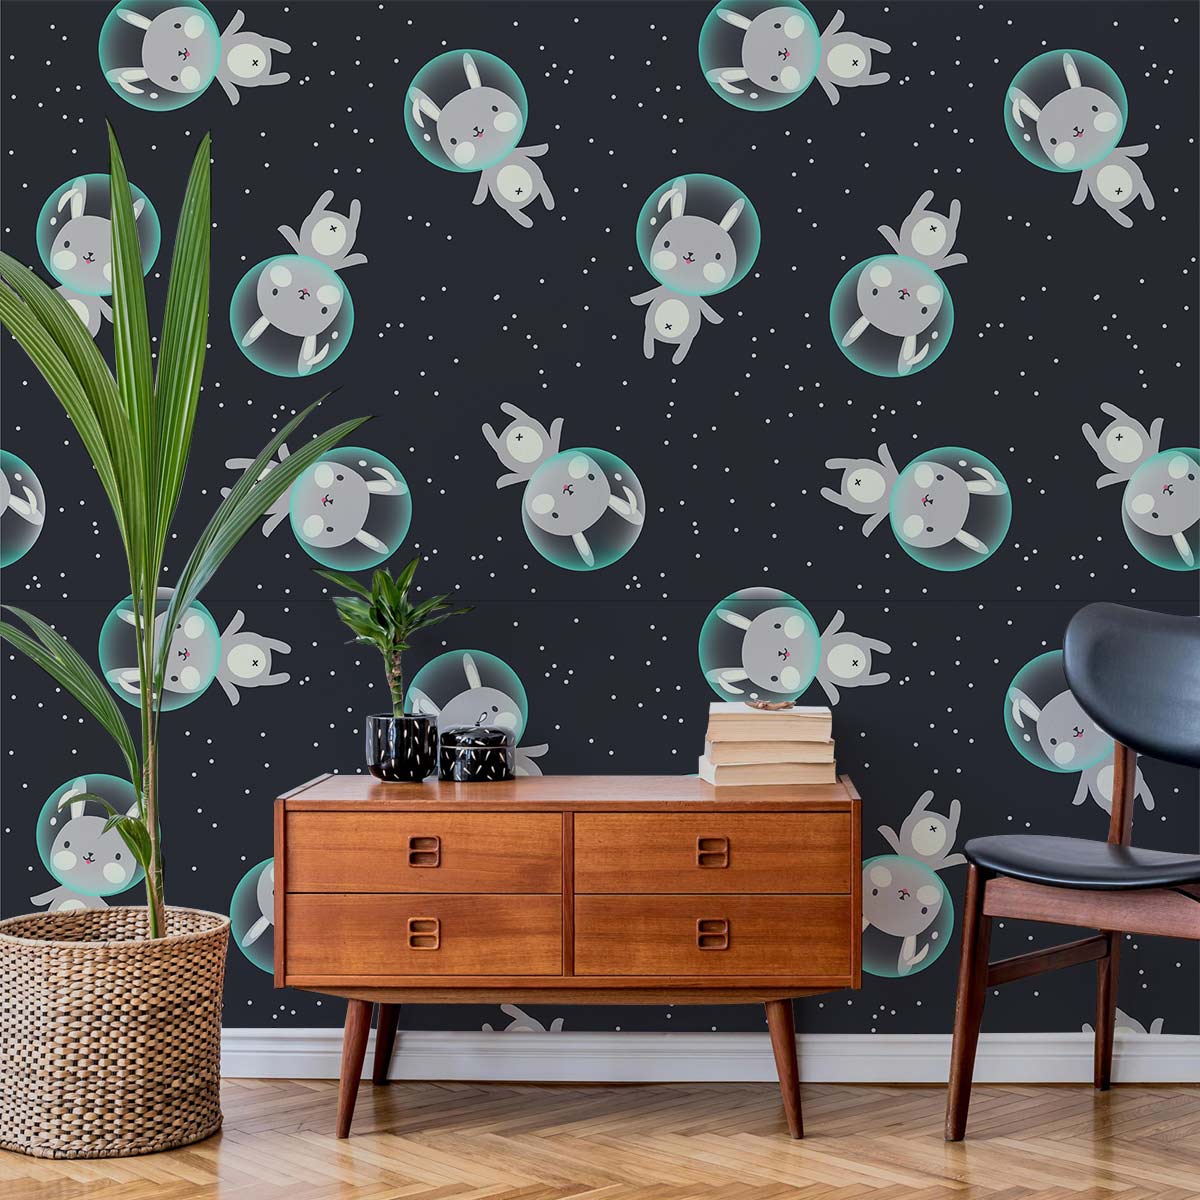 Astronaut Bunny Mural Wallpaper Home Interior Decor